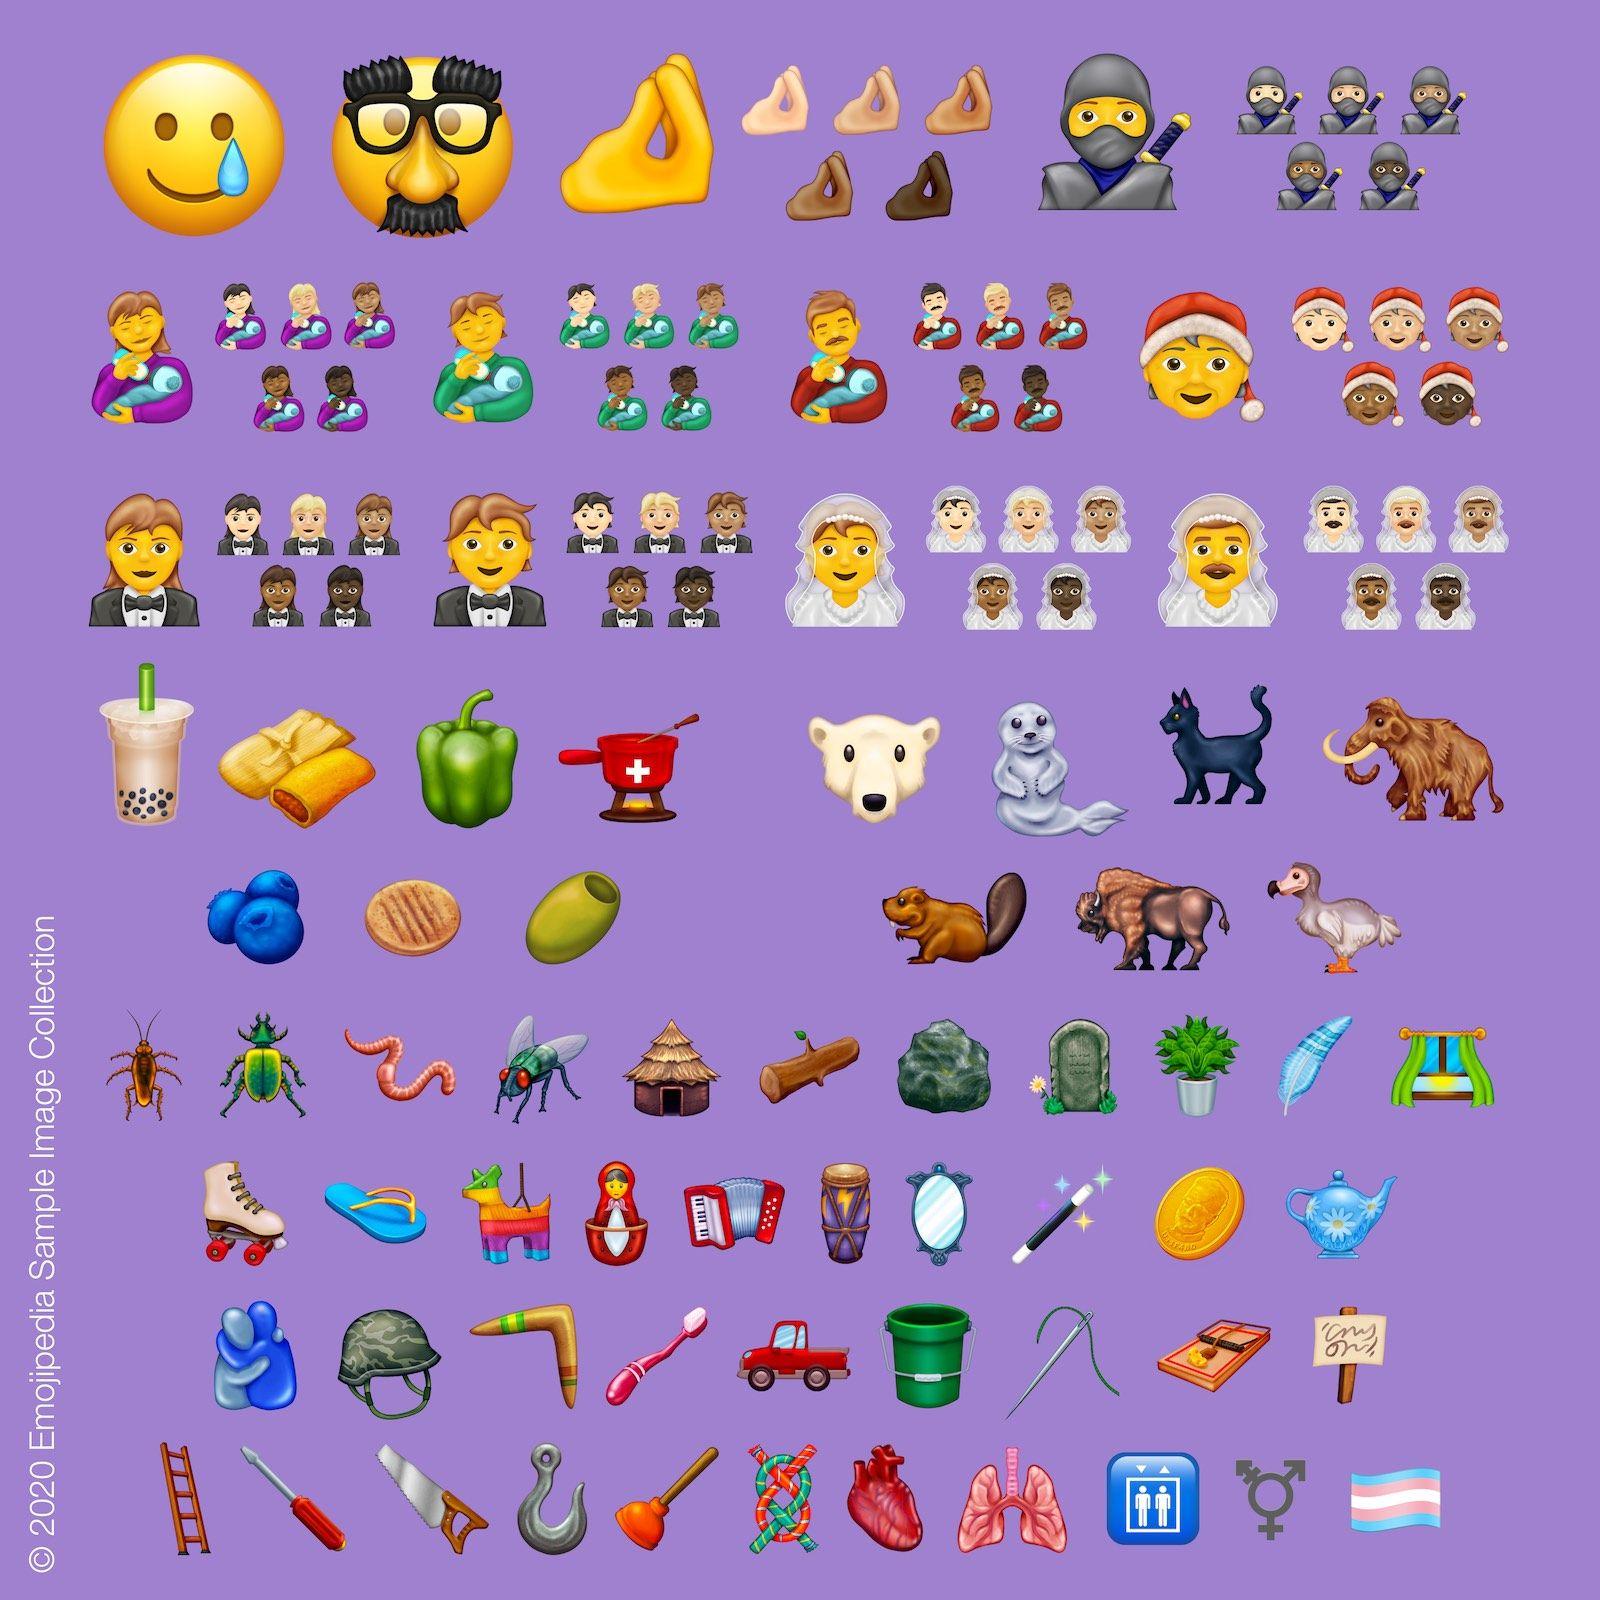 Här är alla emojis som väntas komma år 2020.